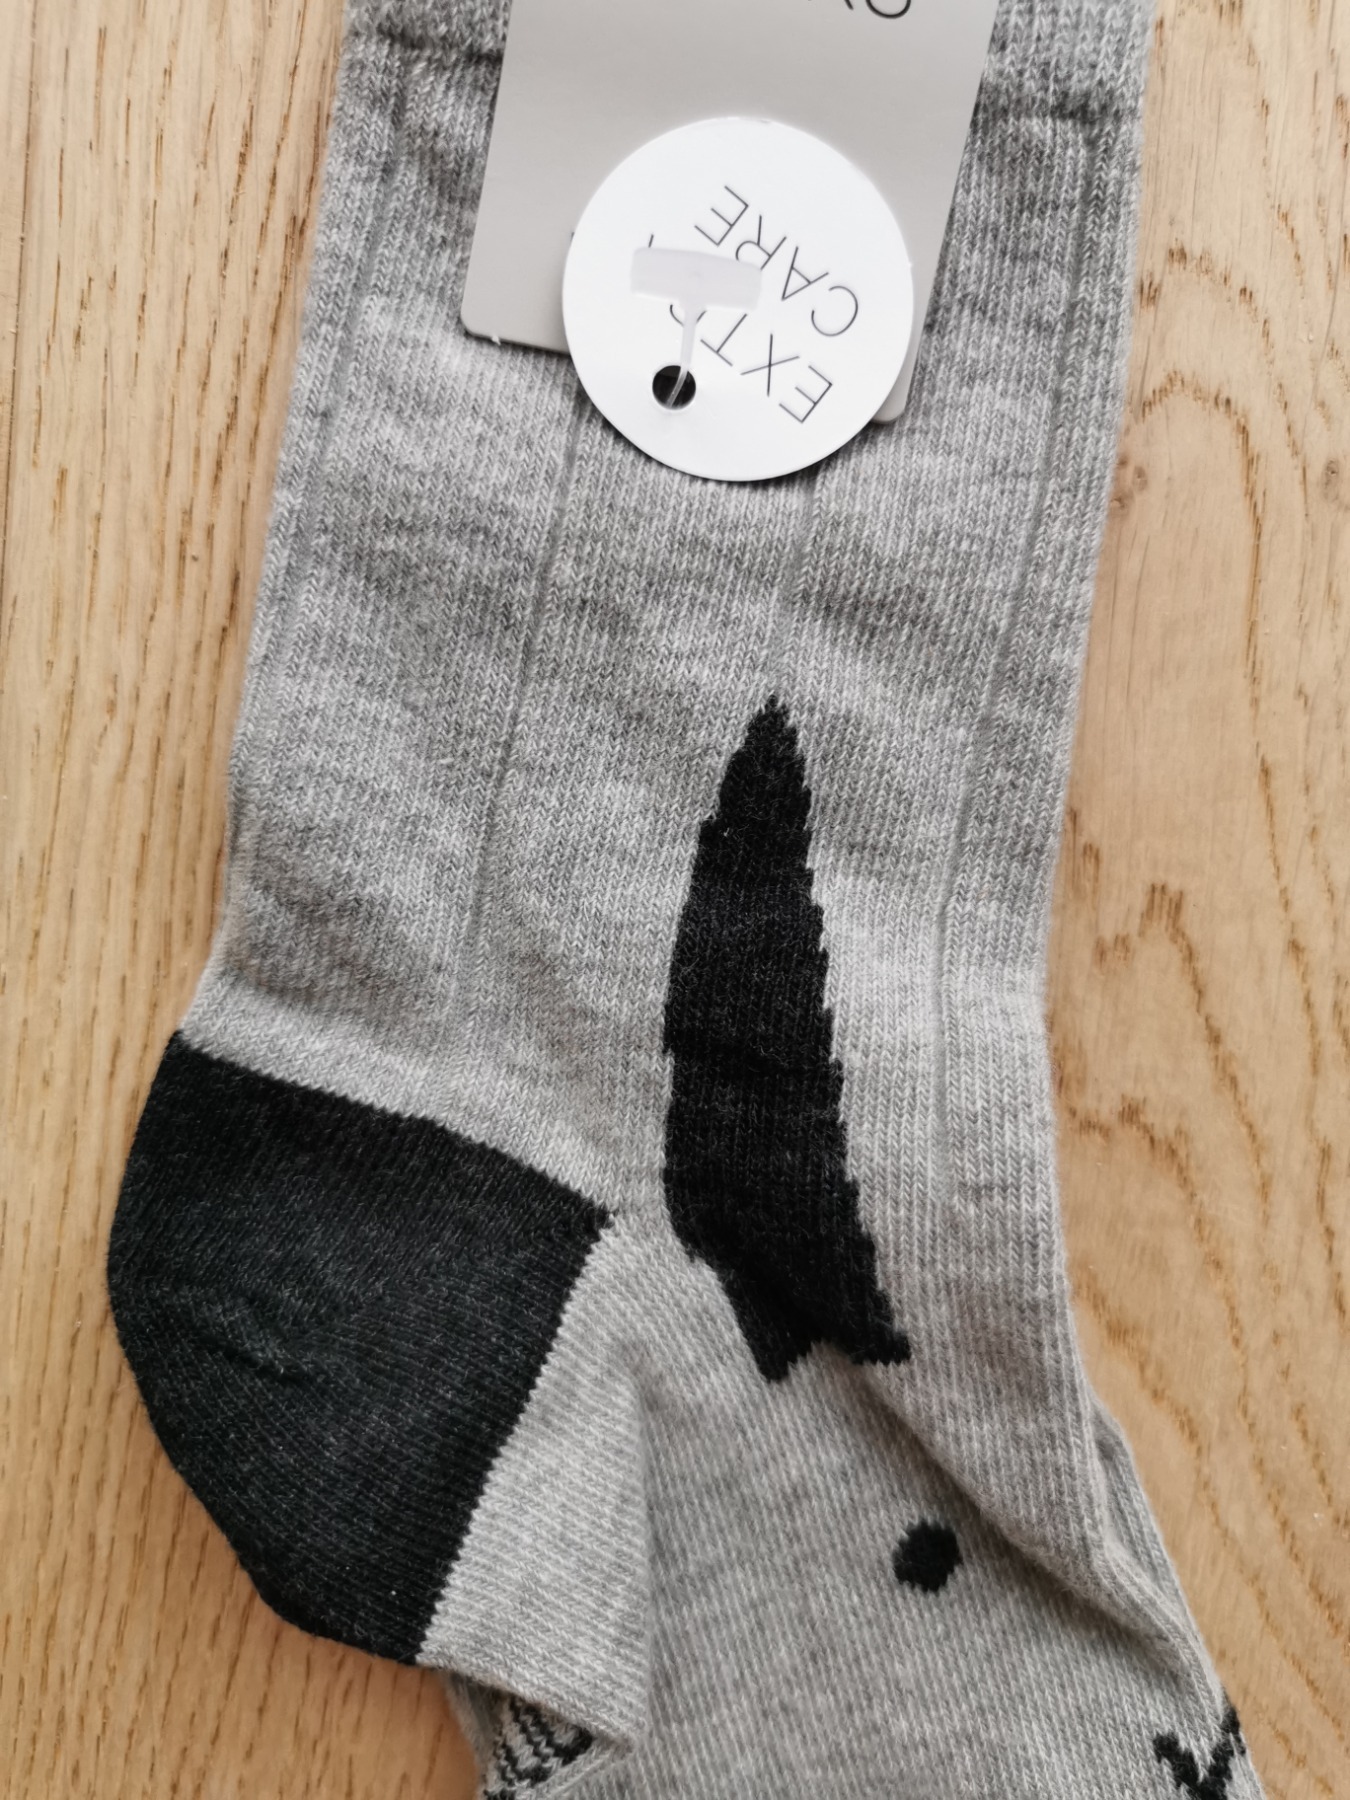 NEU Hasen-Socken - Größe 29-32 2